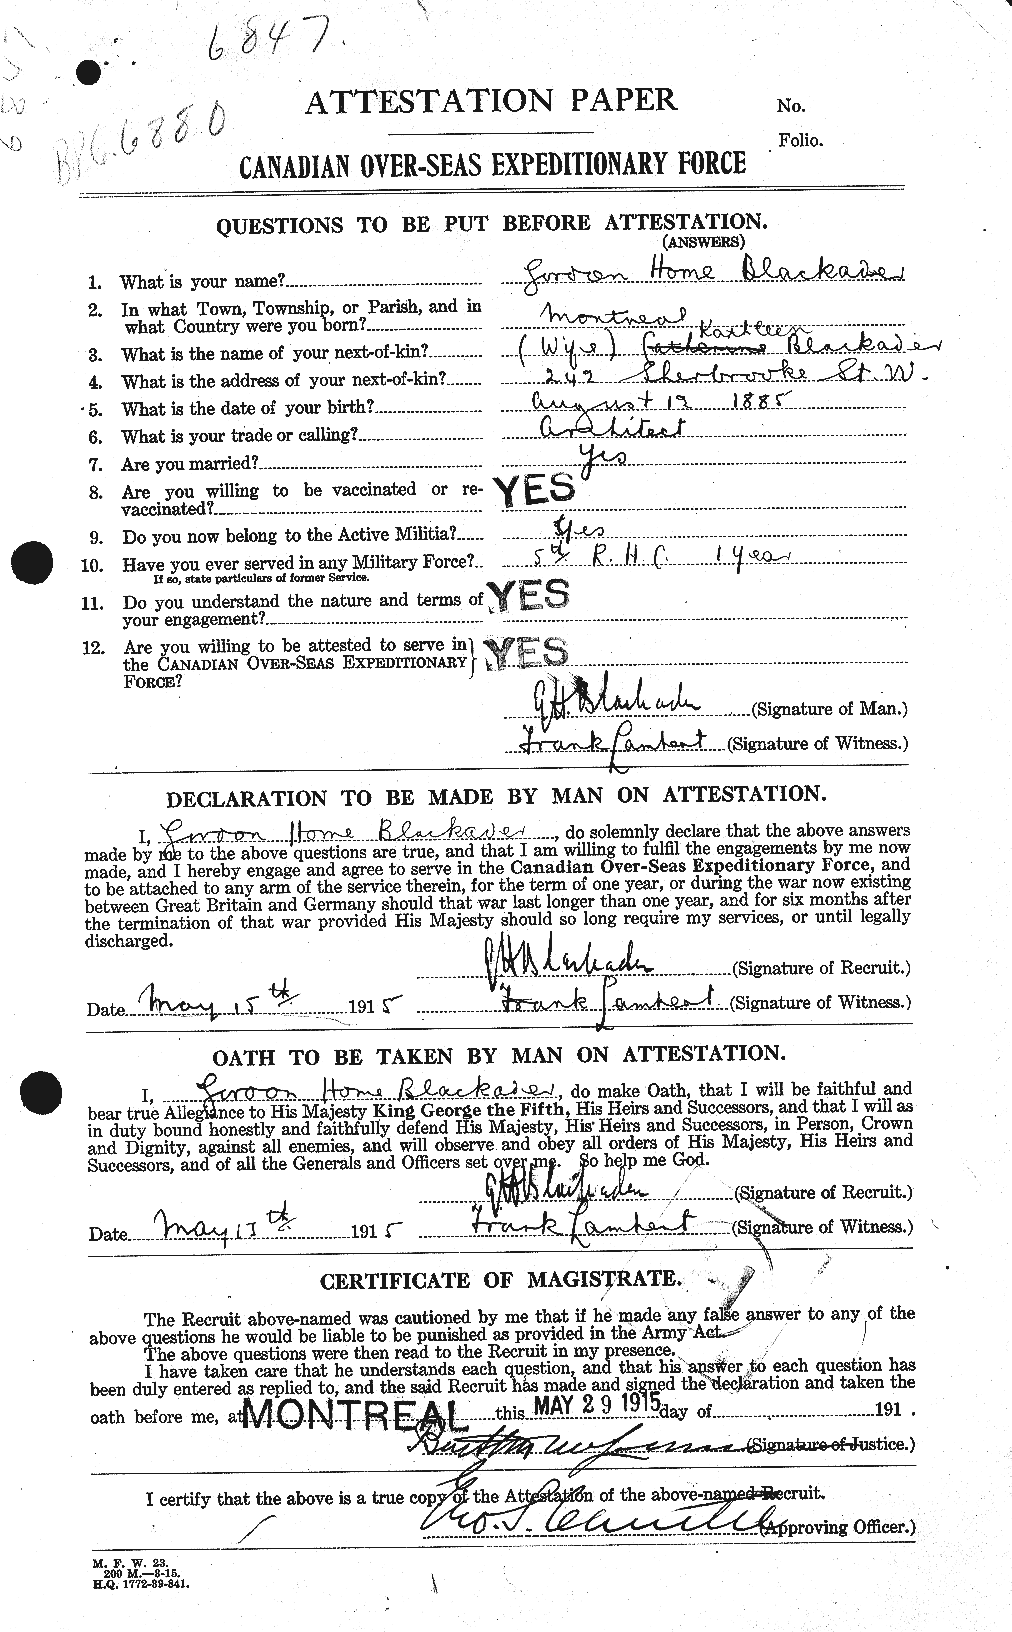 Dossiers du Personnel de la Première Guerre mondiale - CEC 247728a